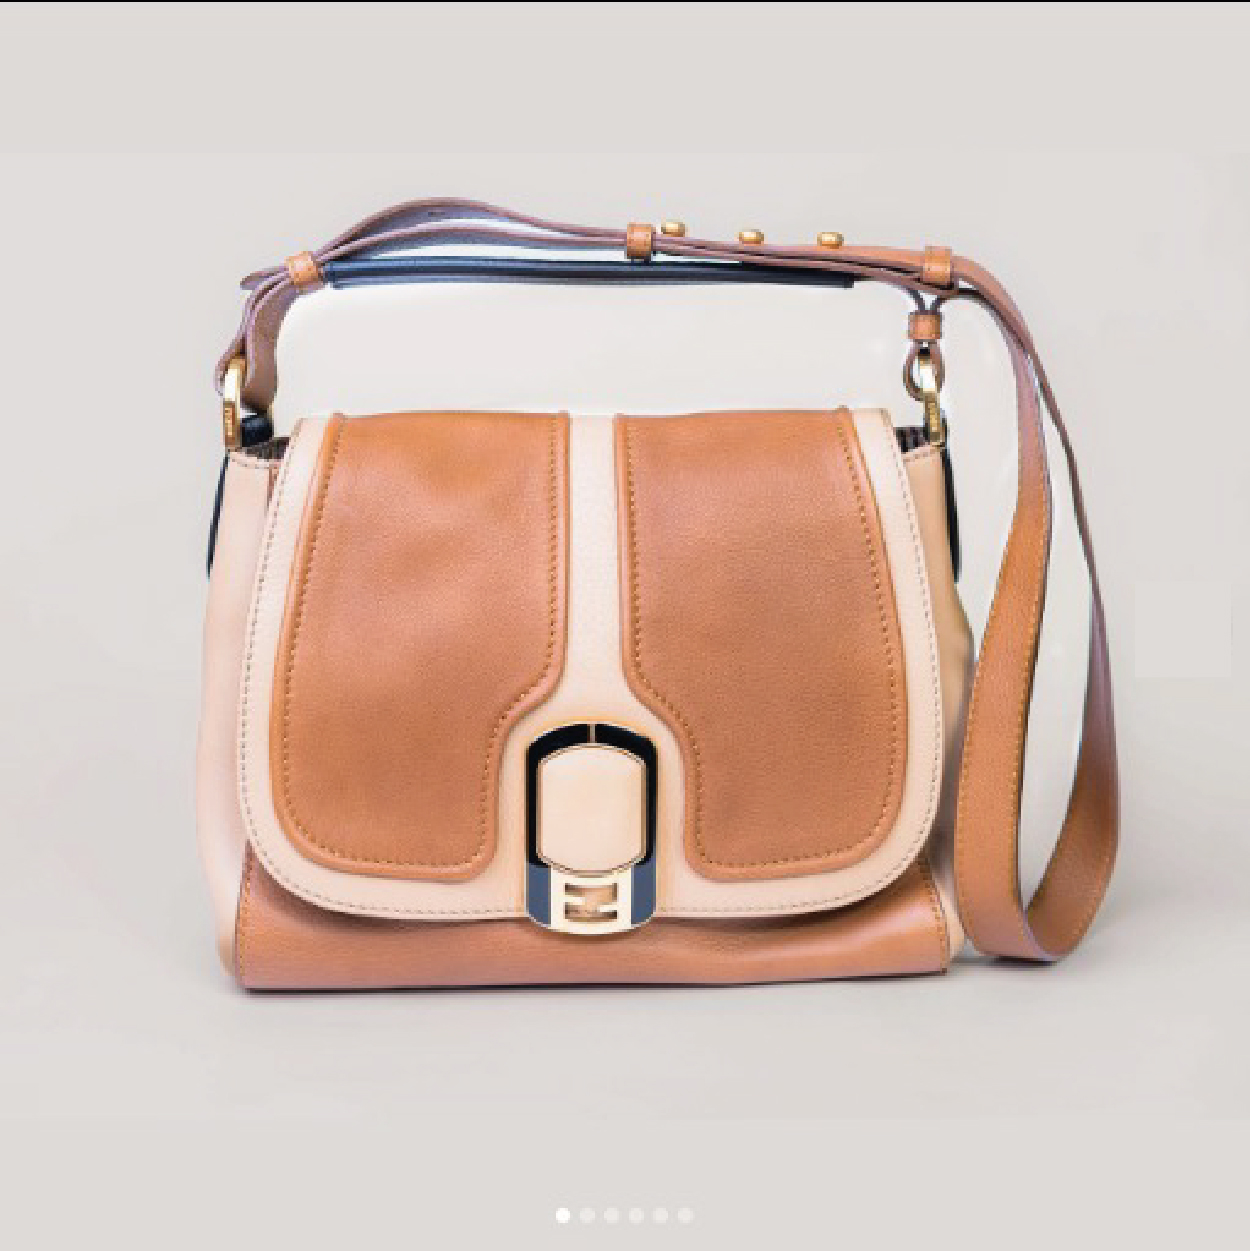 Fendi Anna Flap bag with gold-tone hardware, shoulder strap – Vintage